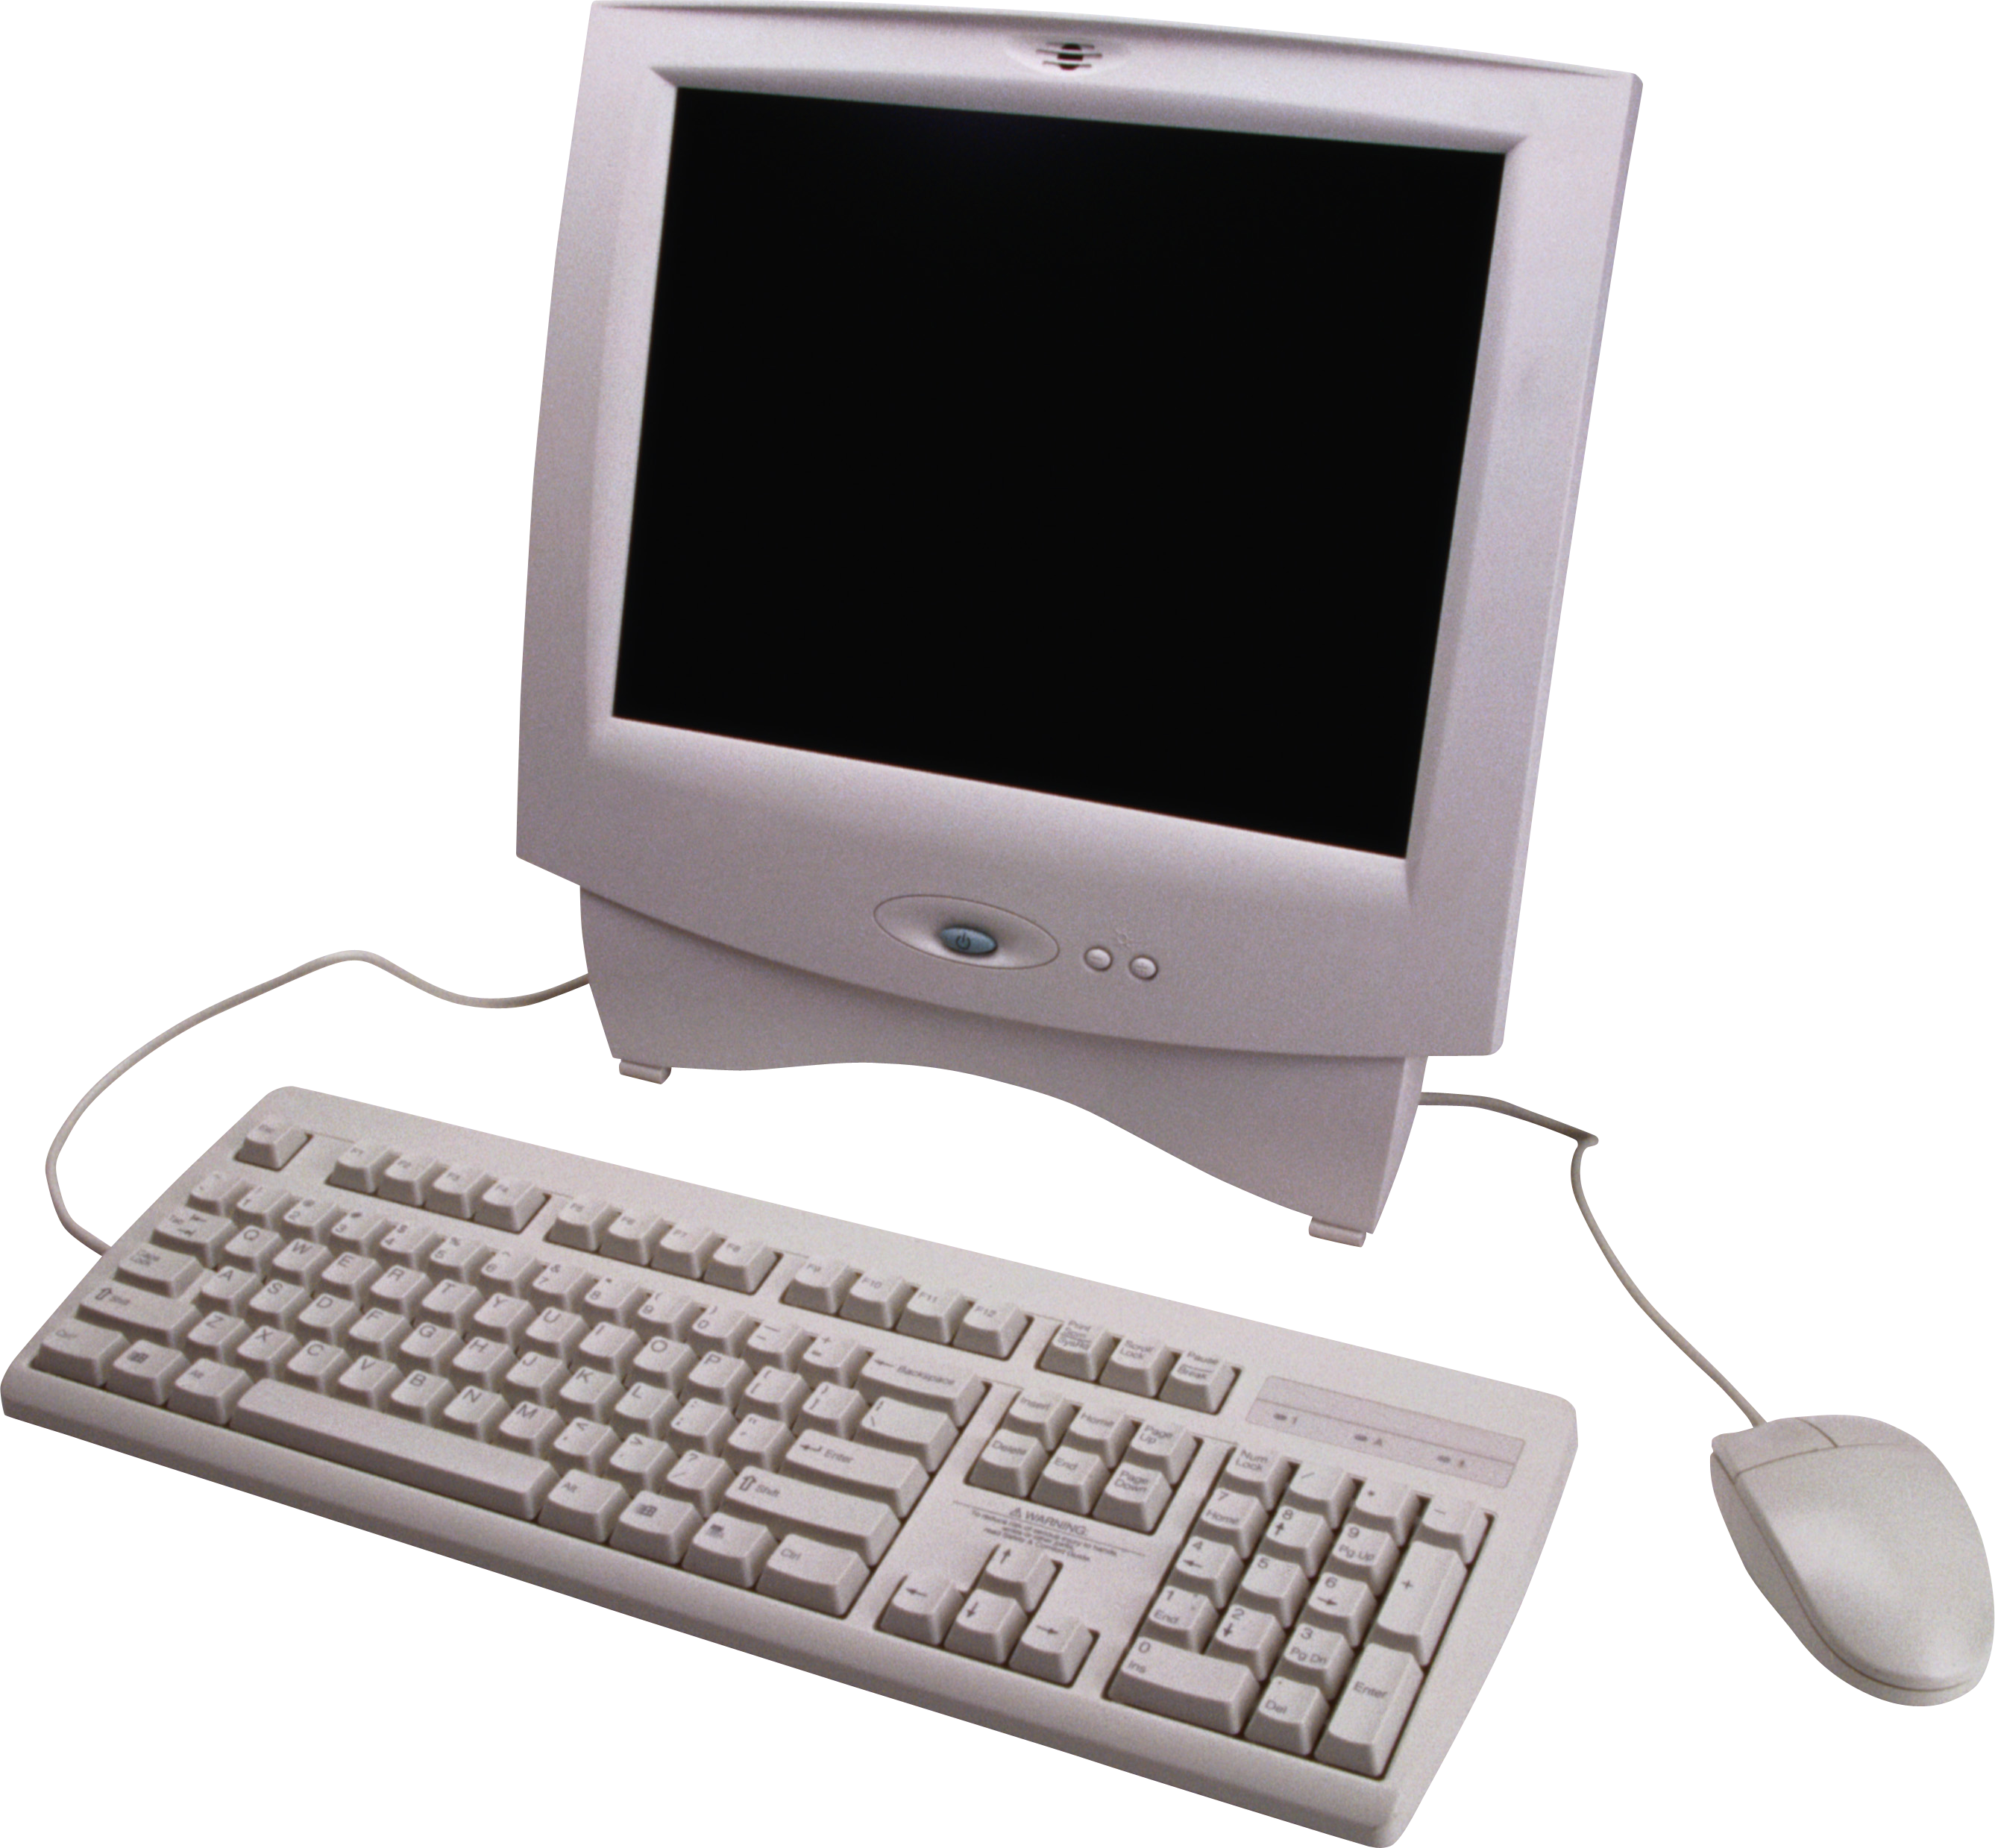 Computer-Desktop-Computer